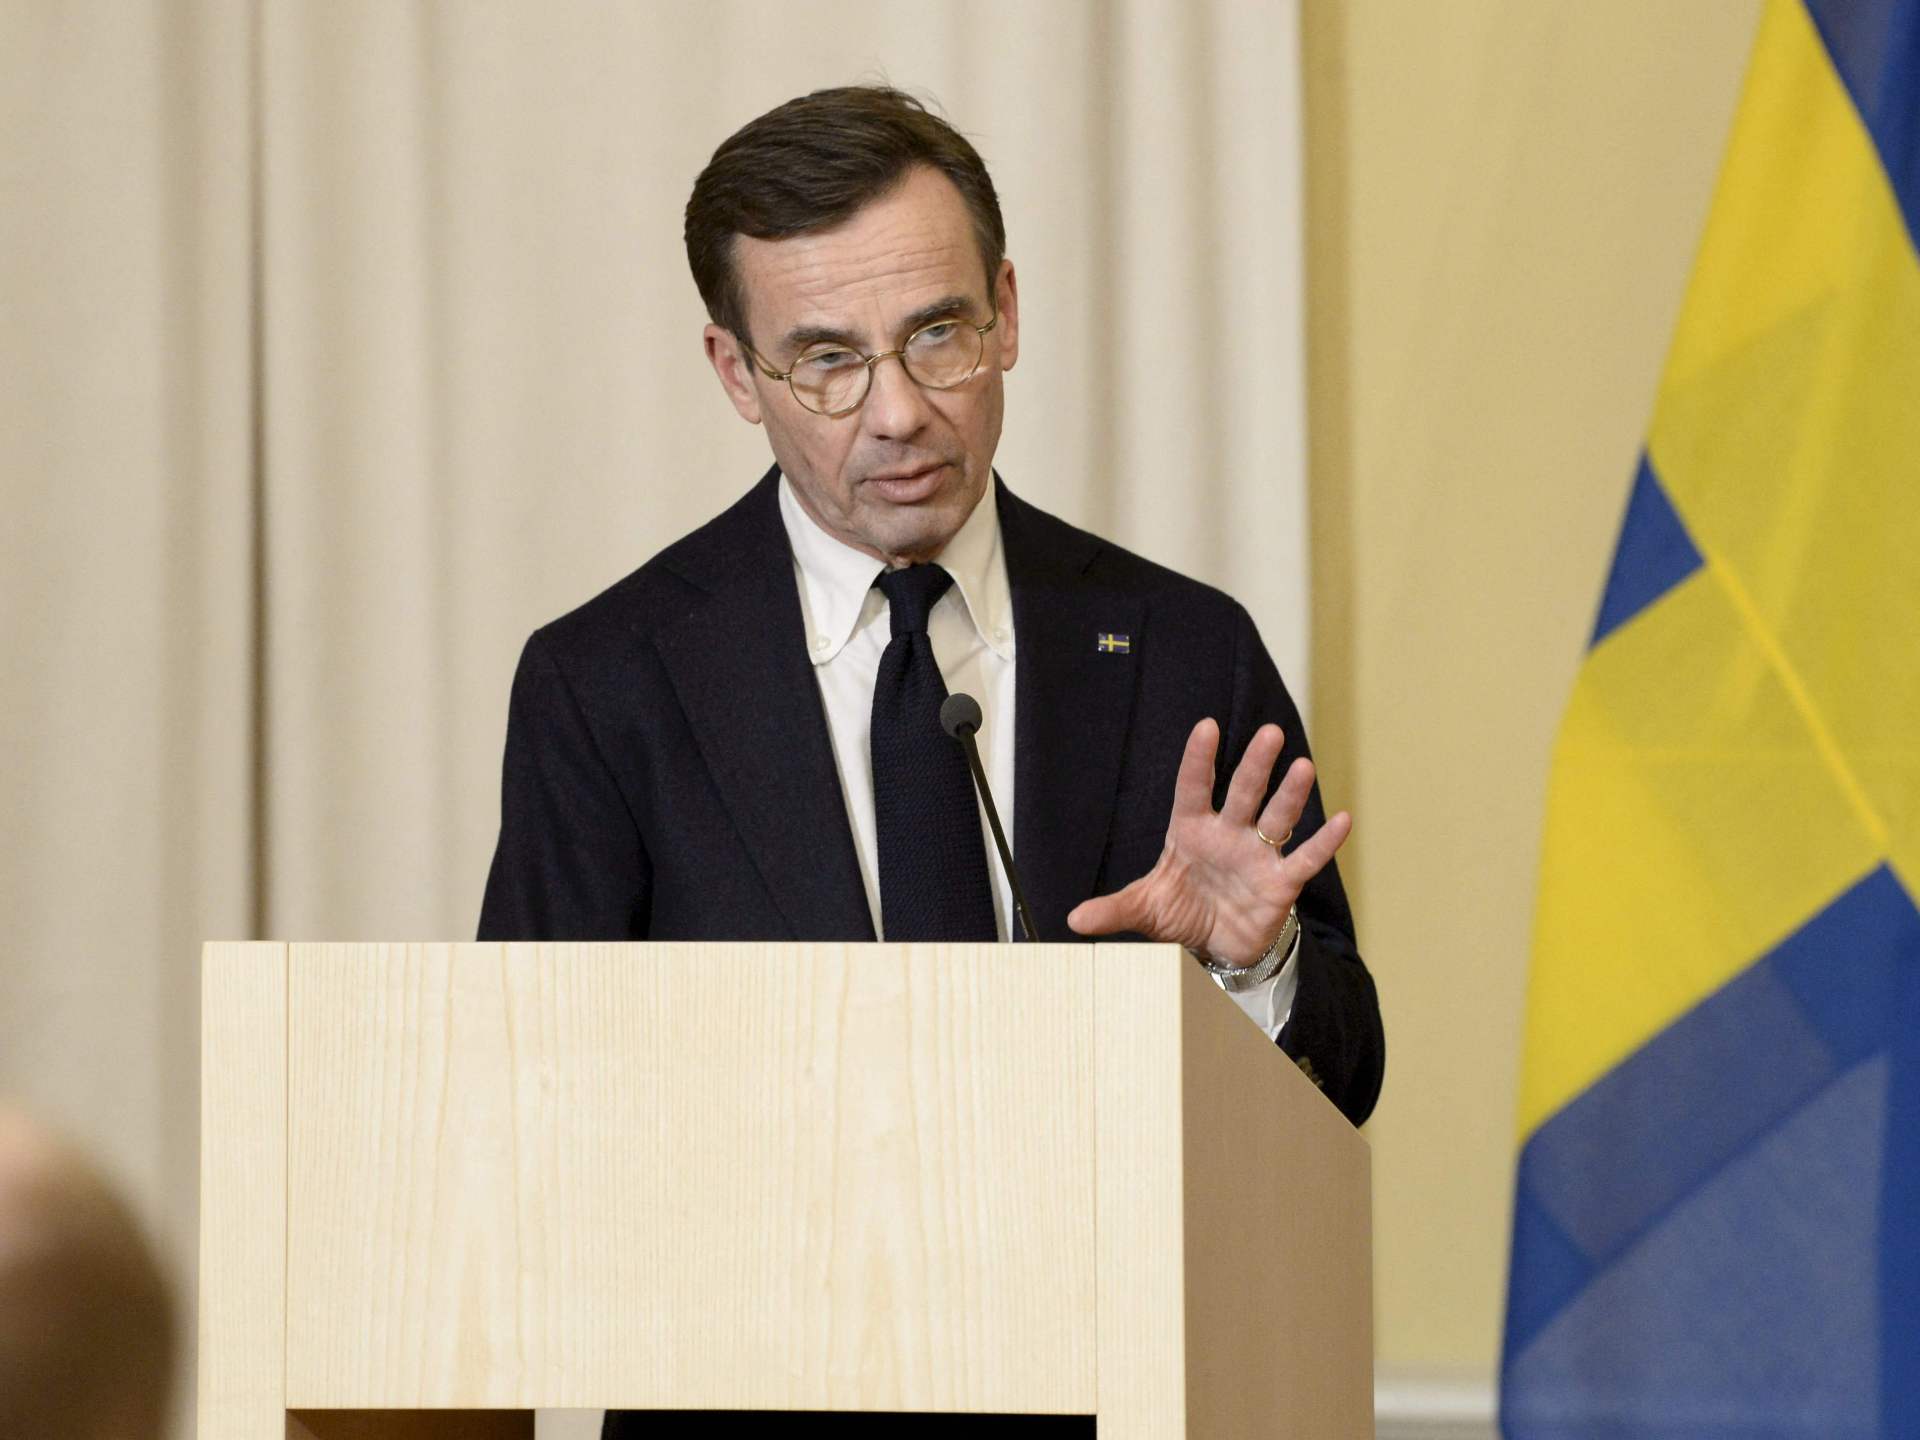 رئيس وزراء السويد يندد بدعوة زعيم اليمين المتطرف لهدم مساجد | أخبار – البوكس نيوز